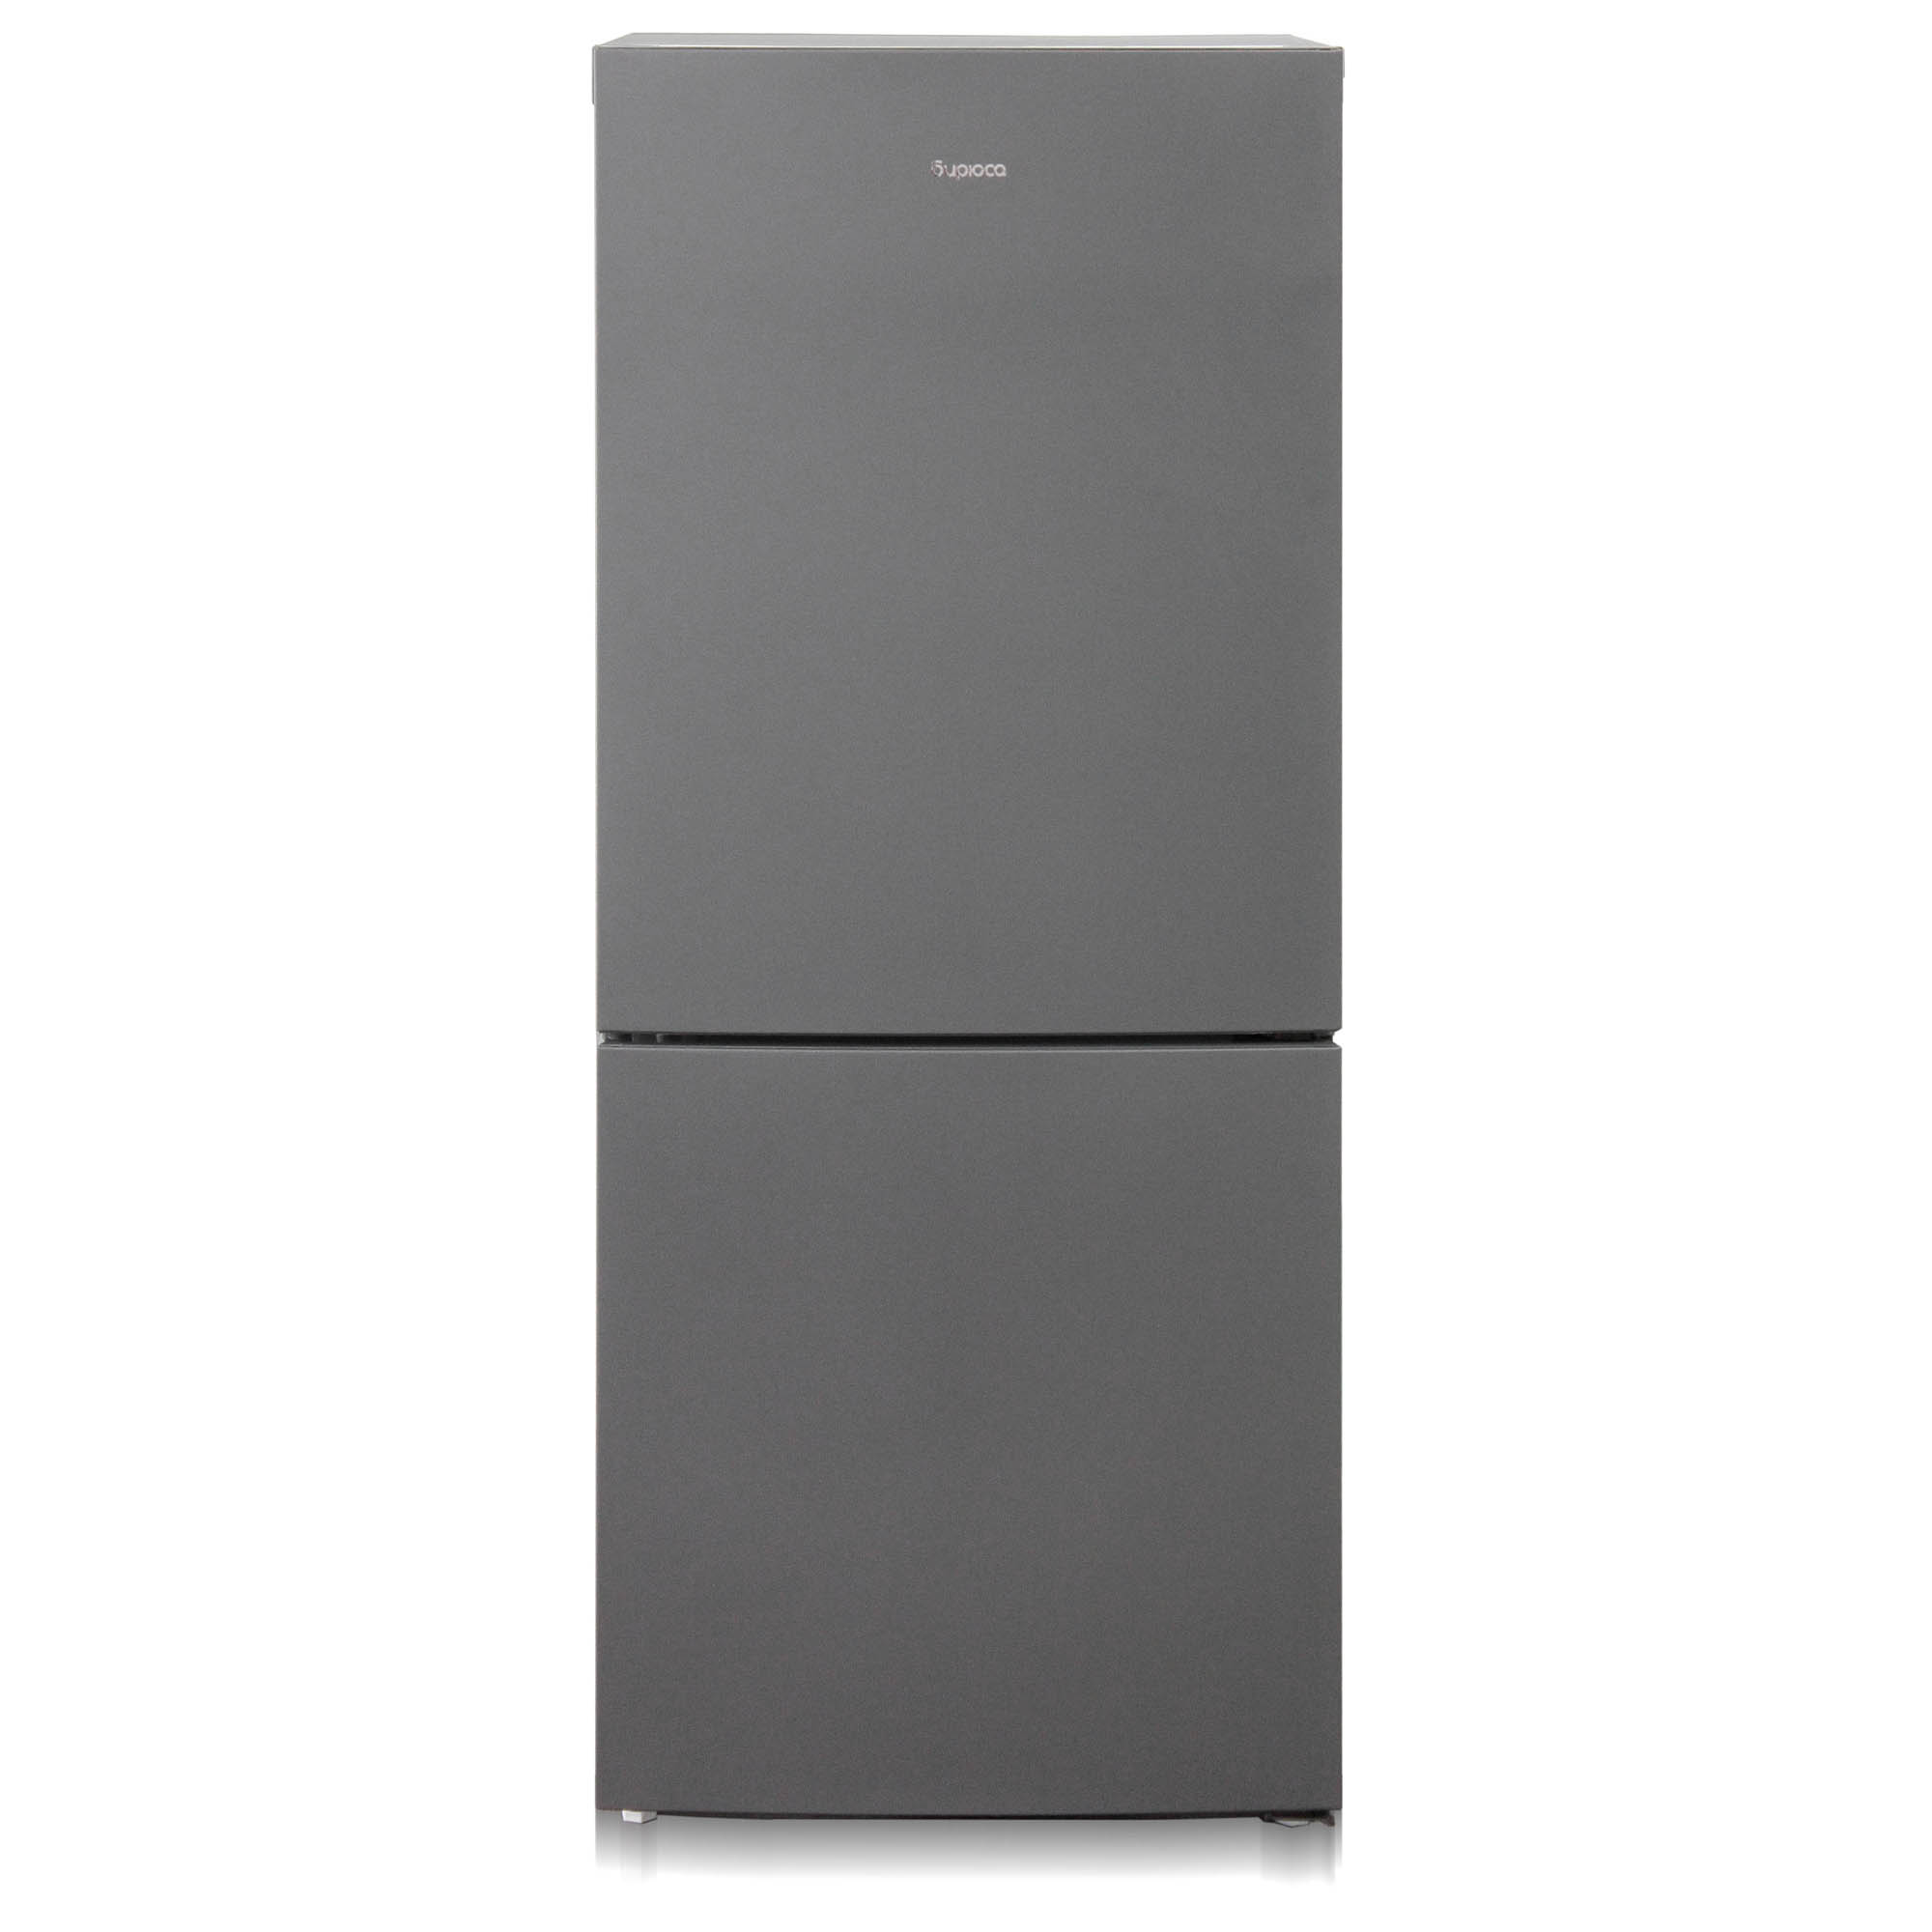 Холодильник Бирюса W6041, матовый графит